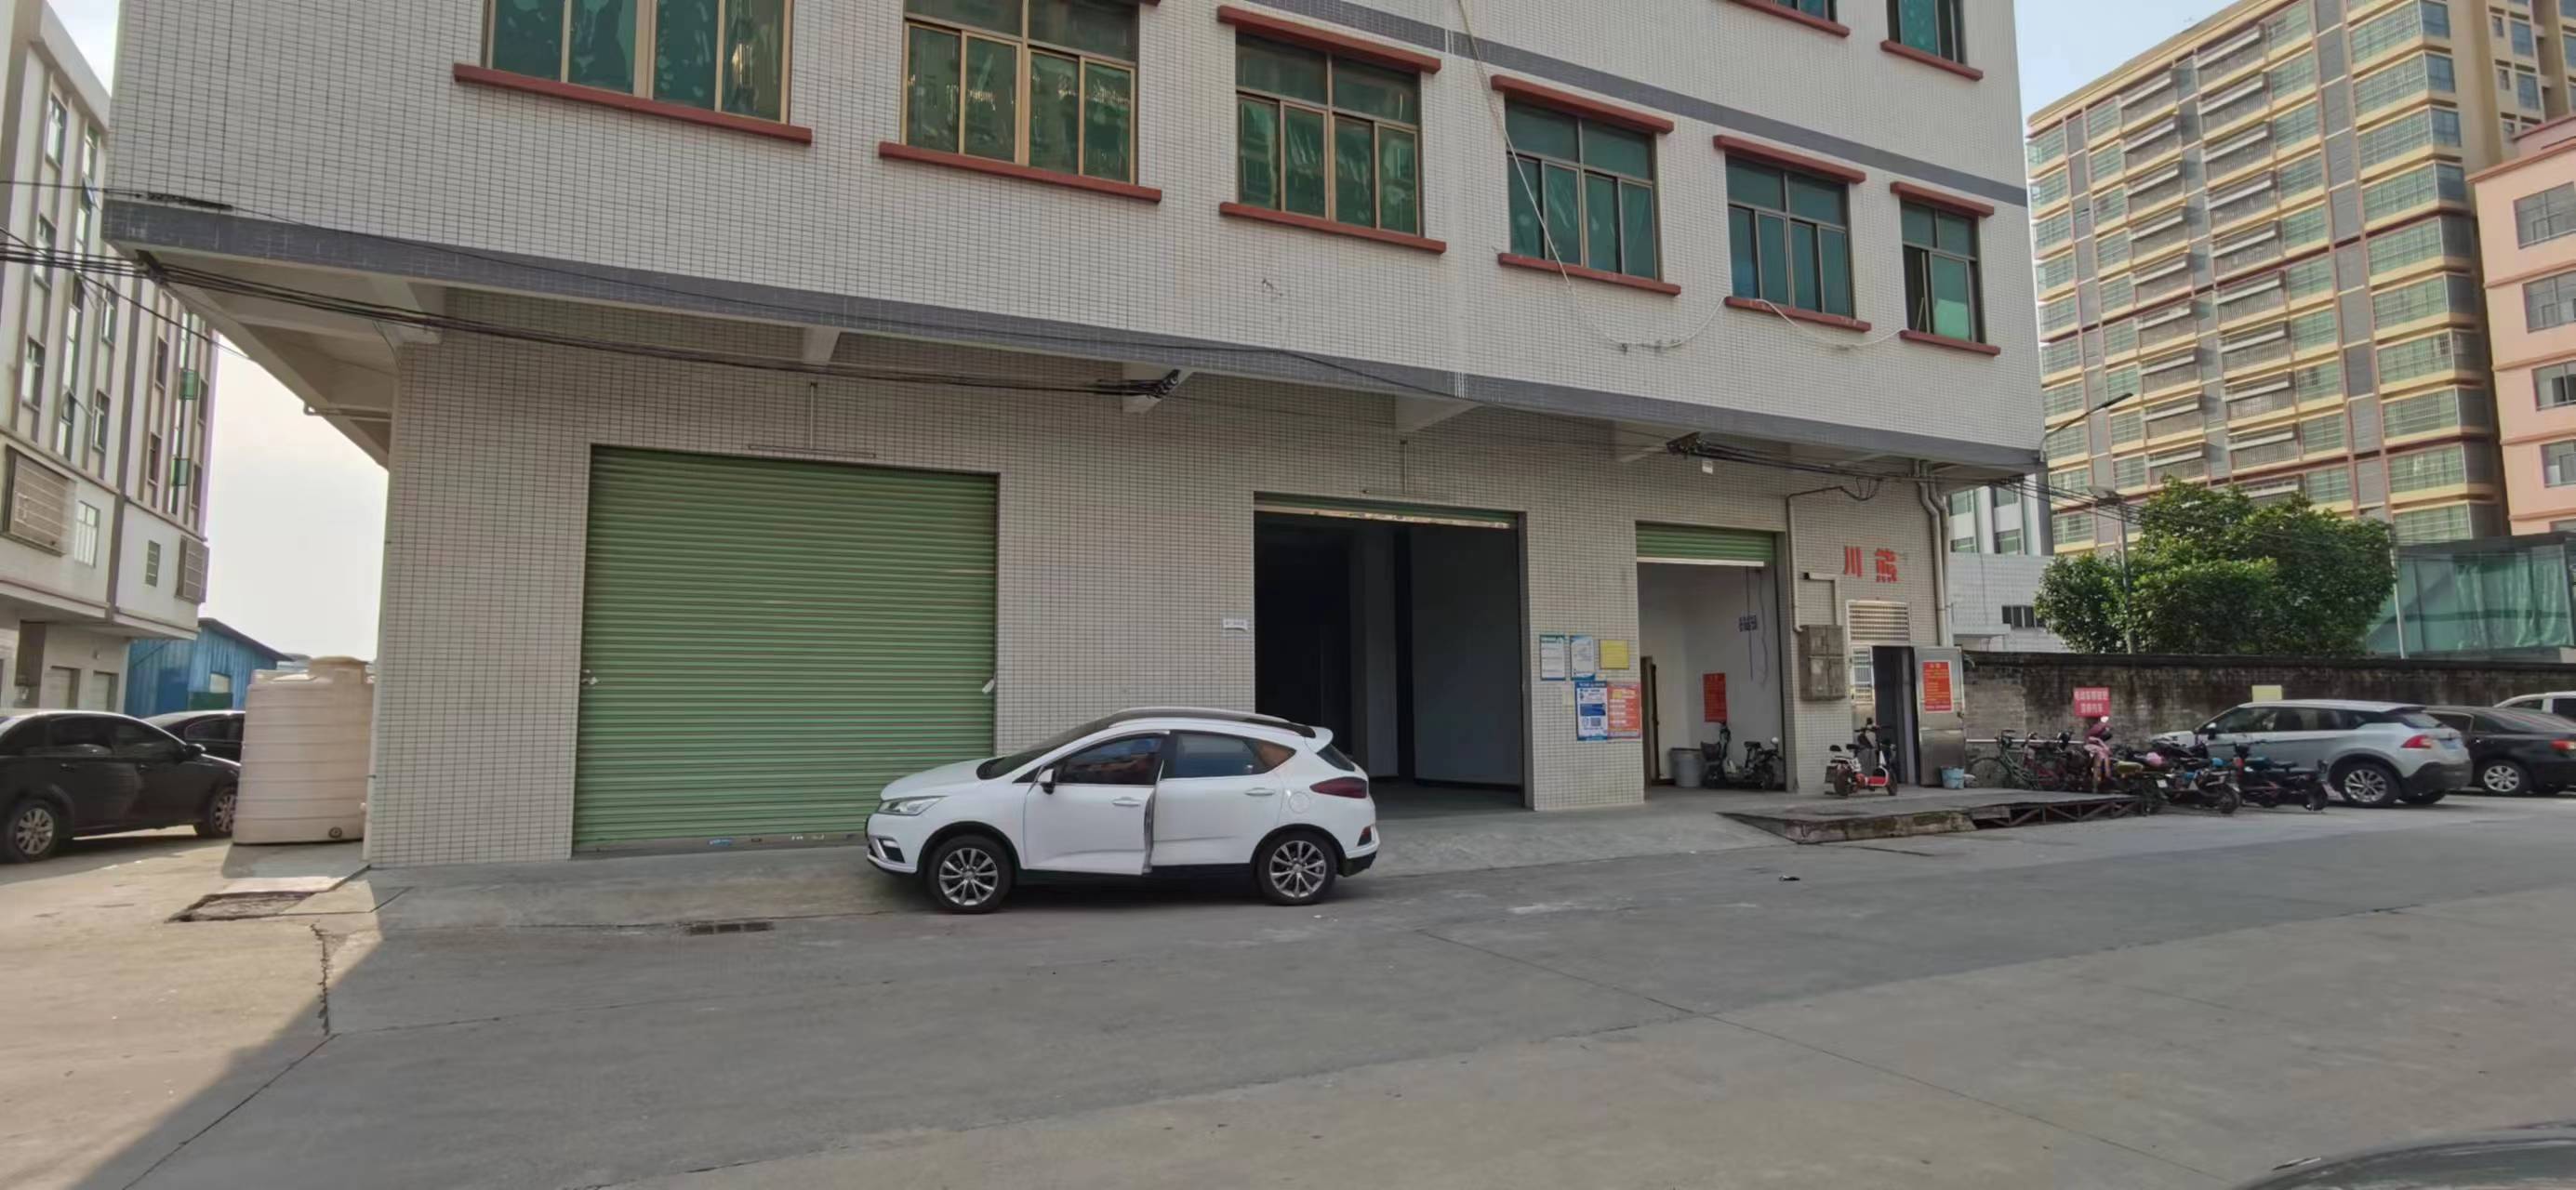 东莞横沥贝冲新出厂房一楼900平方精装修厂房出租有地坪漆